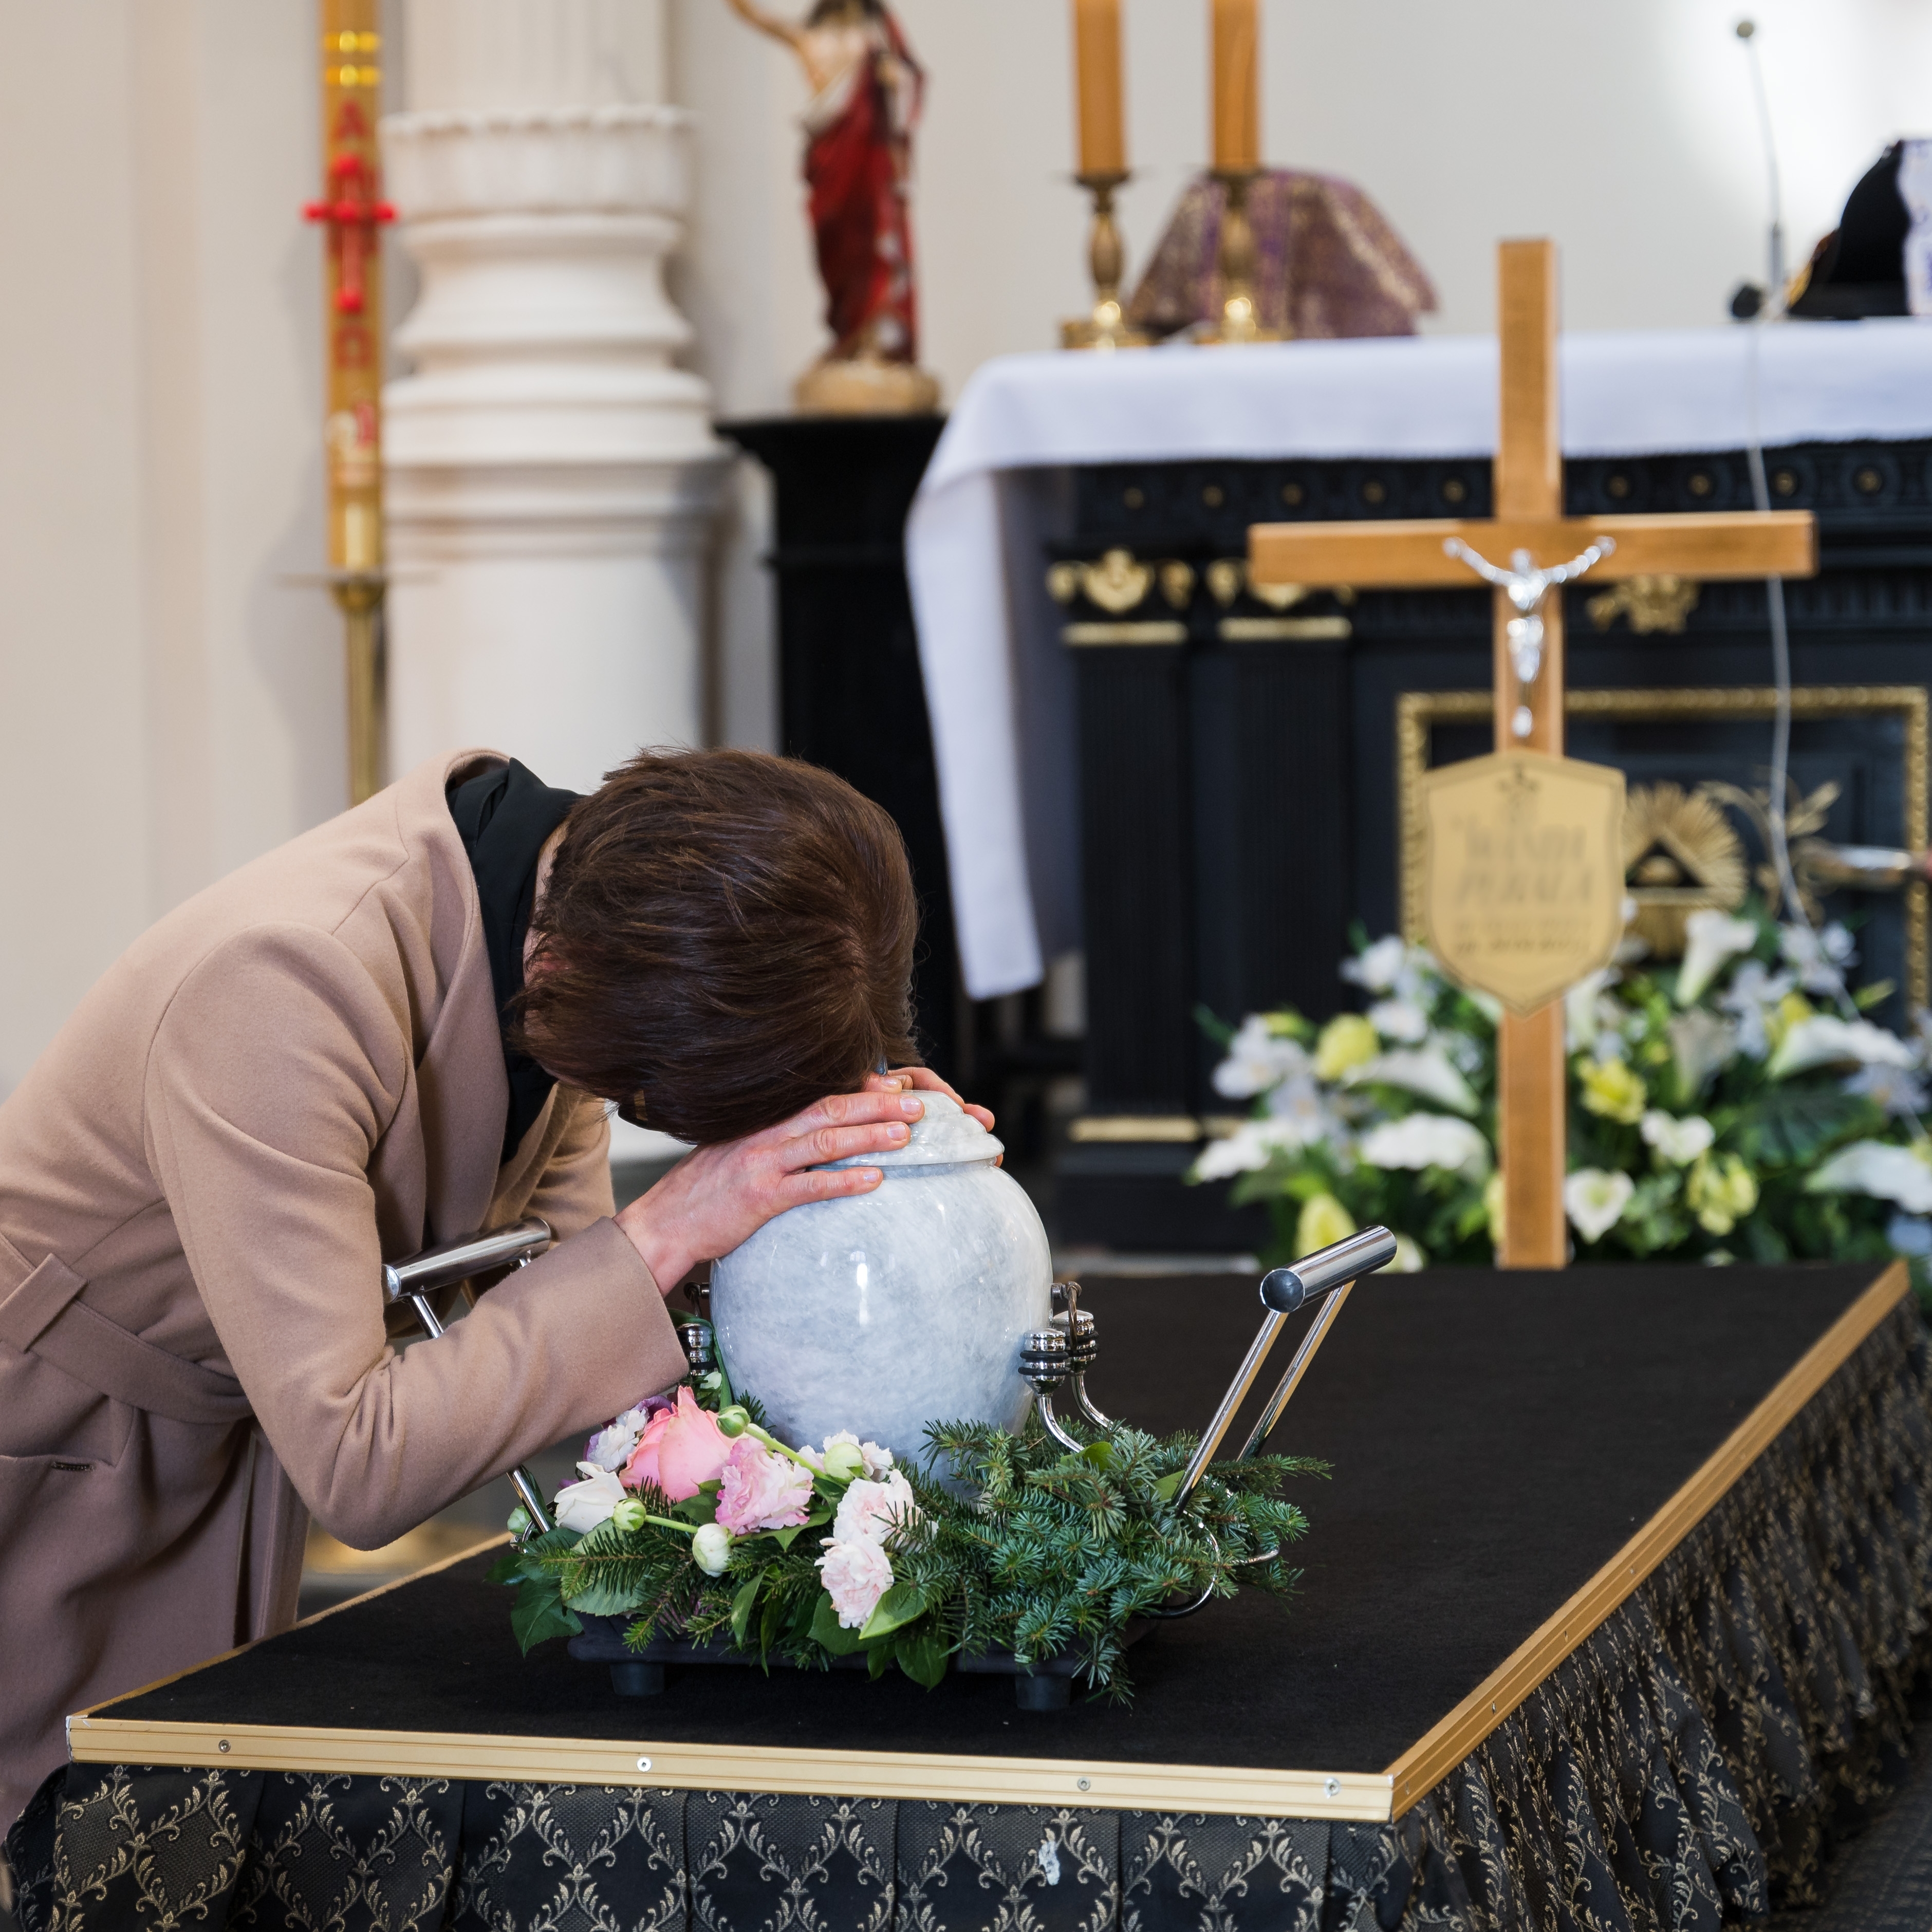 Eine Frau weint während einer Beerdigung über der Urne eines geliebten Menschen | Quelle: Shutterstock